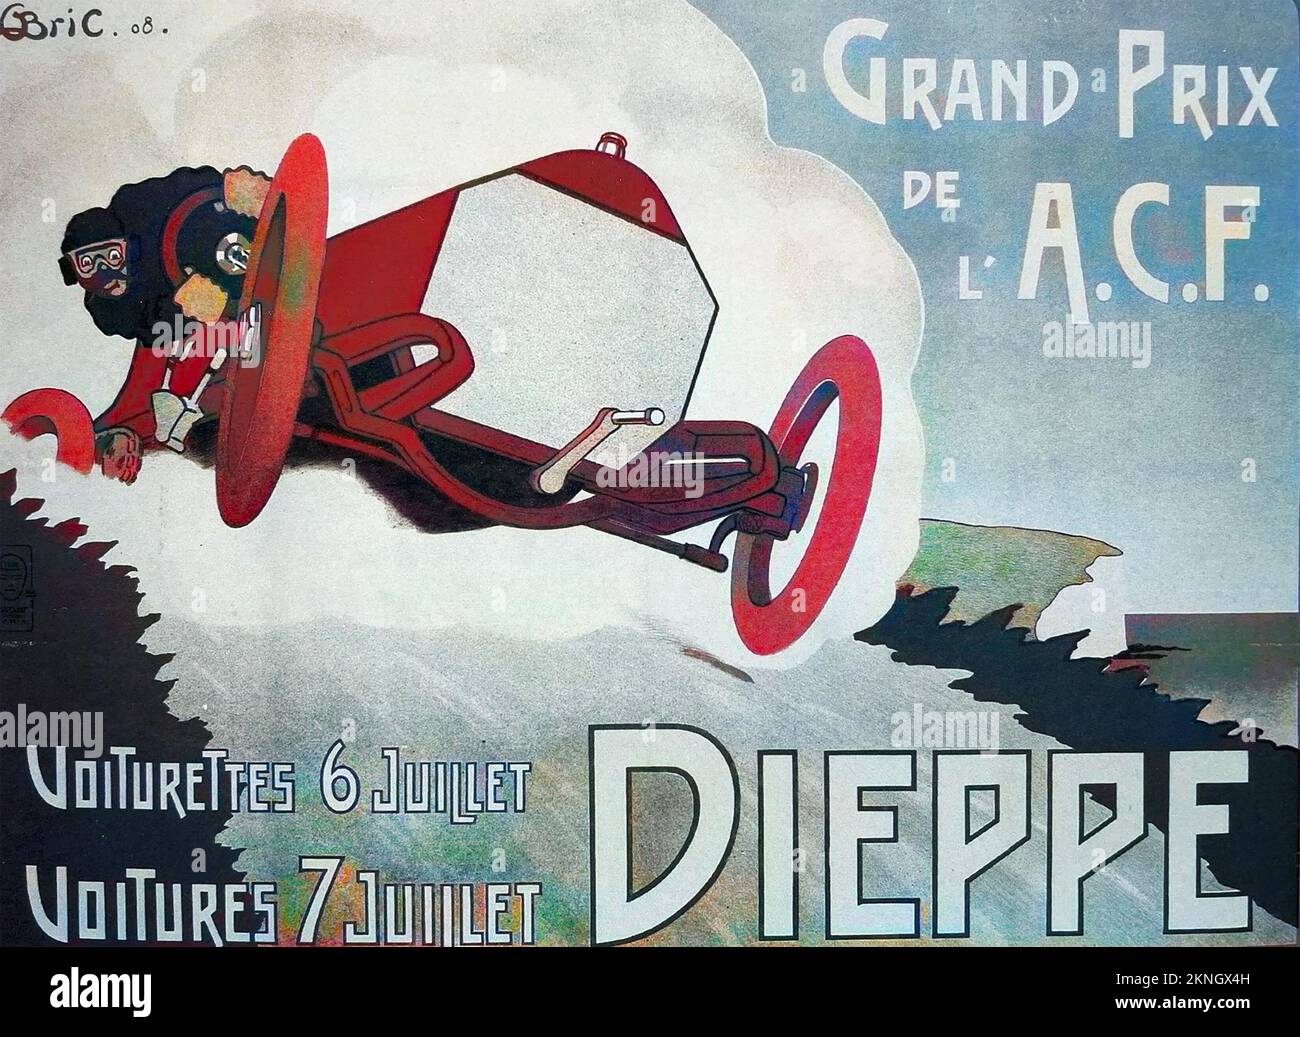 DIEPPE GRAND PRIX 1908 A pesar del humor en esta imagen en la carrera real un conductor y su mecánico murieron cuando su coche volcó - las primeras muertes en la historia del Grand Prix. Foto de stock